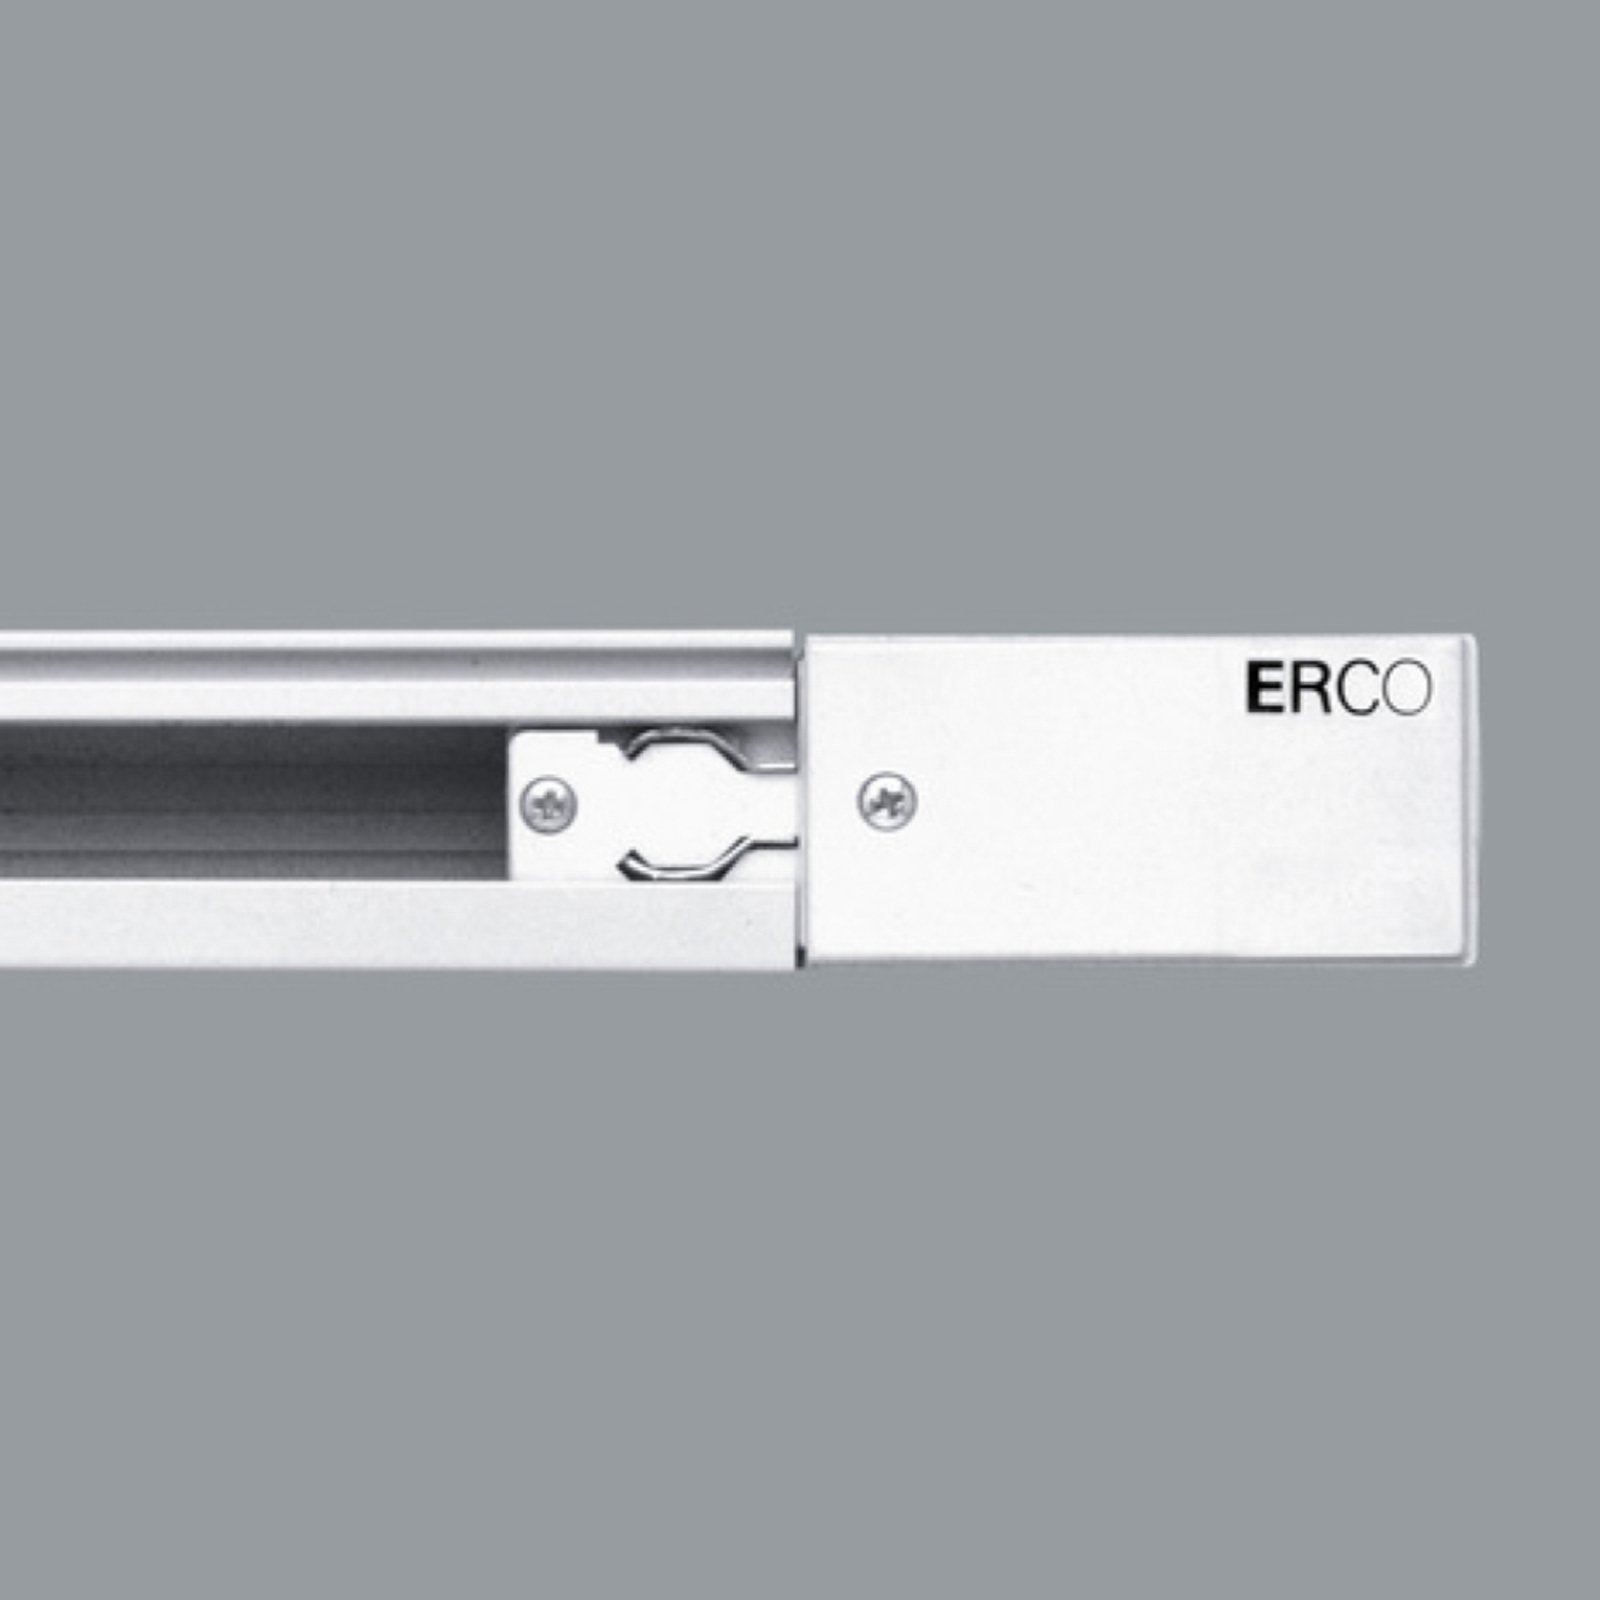 ERCO 3-Phasen-Einspeisung Schutzleiter rechts weiß